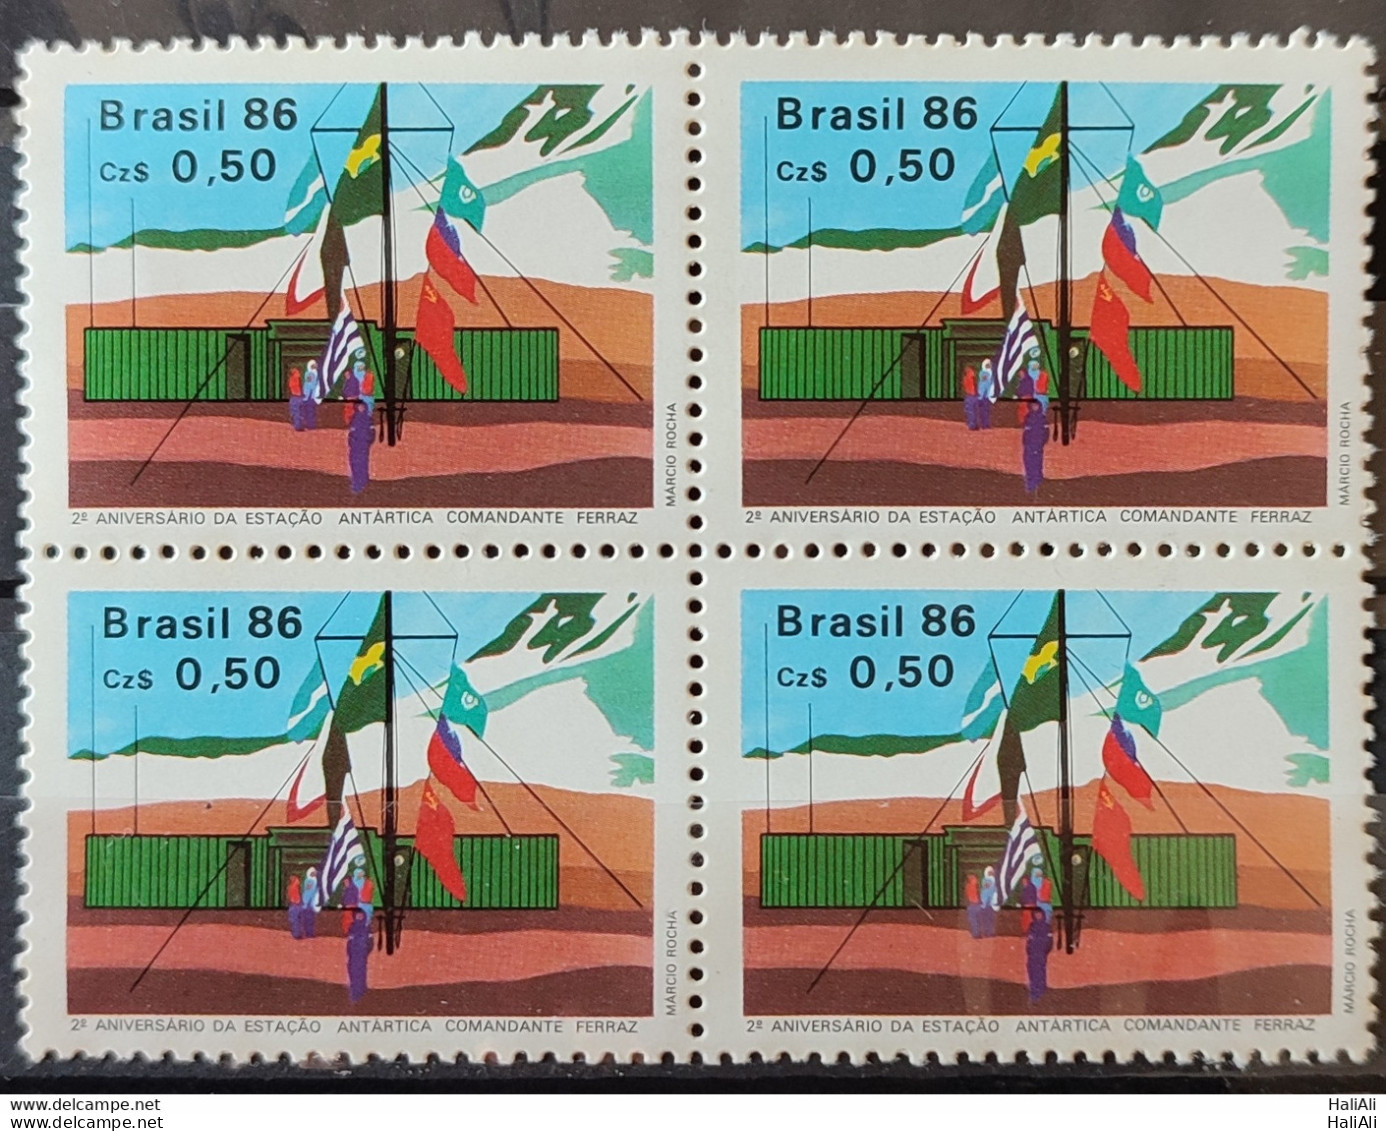 C 1508 Brazil Stamp Antarctic Station Commander Ferraz Flag 1986 Block Of 4 2.jpg - Neufs